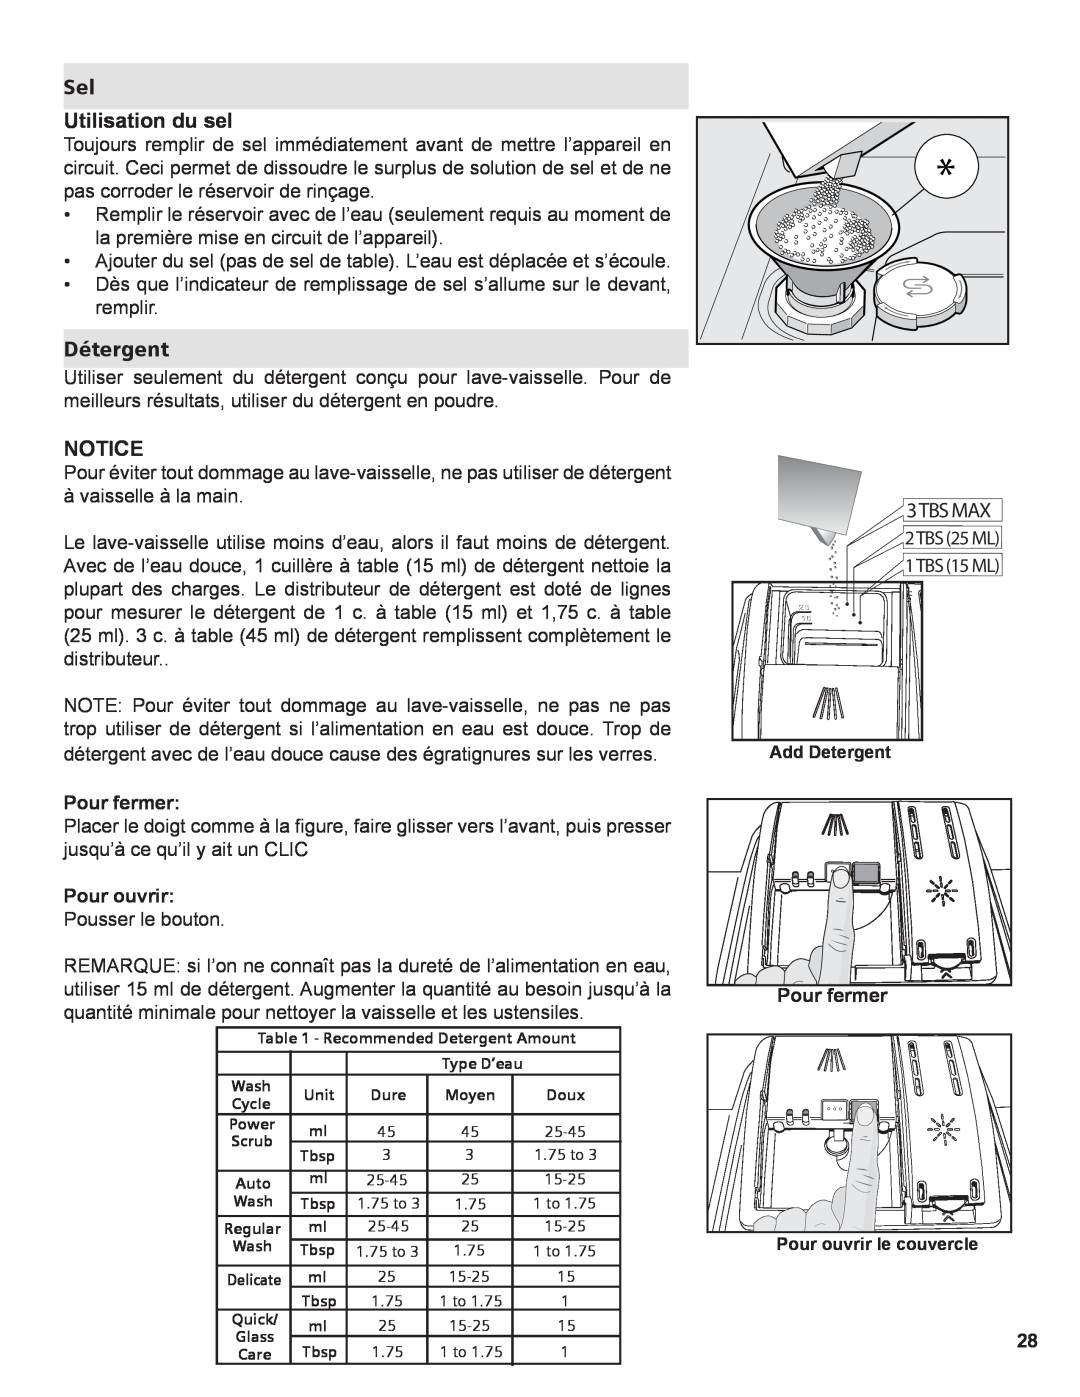 Thermador Dishwasher manual Sel Utilisation du sel, Détergent, Notice, Pour fermer, Pour ouvrir 